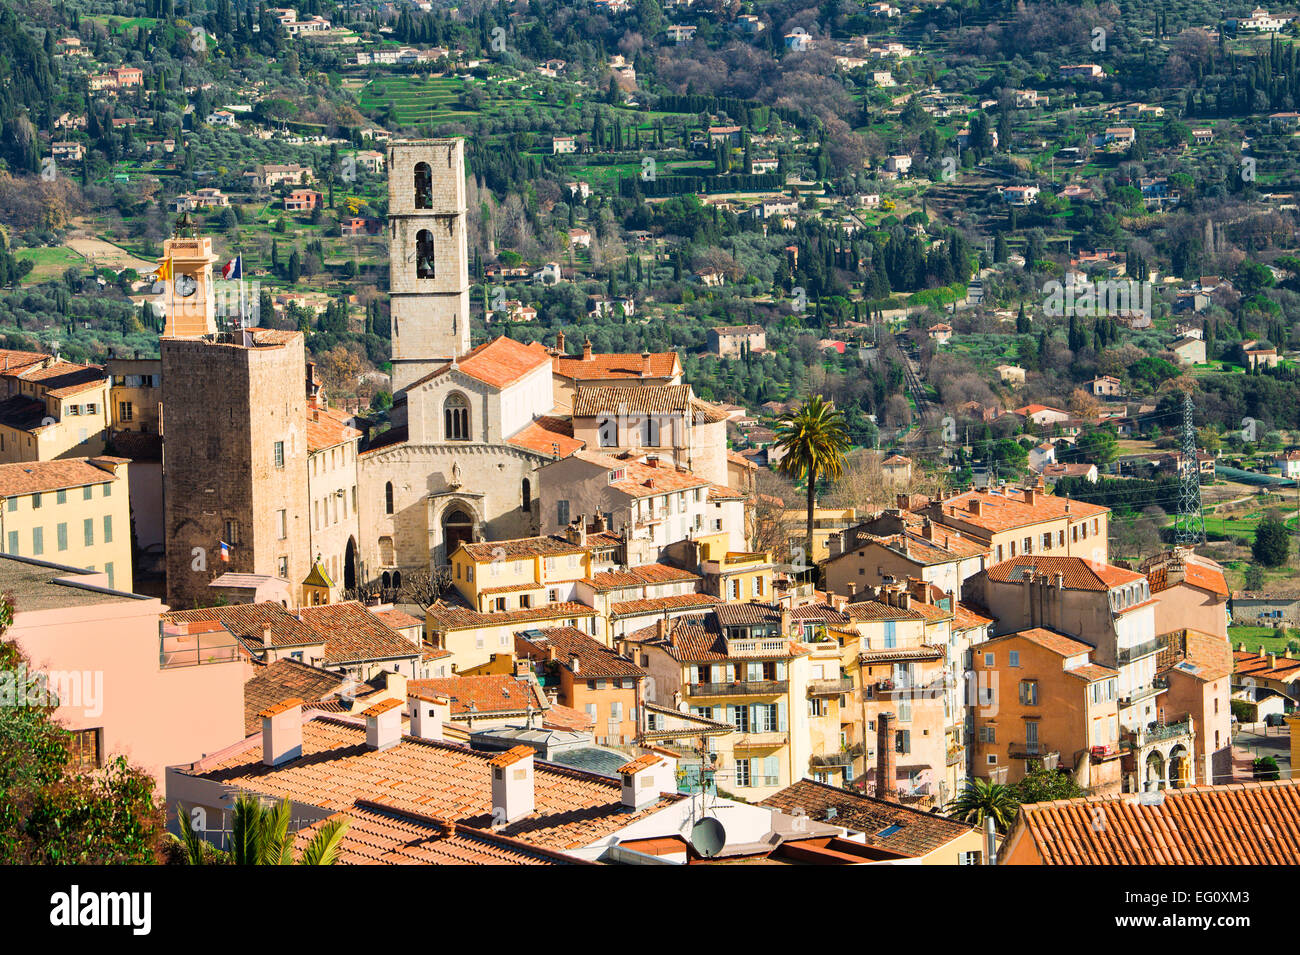 Vue sur la vieille ville de Grasse et de la cathédrale Notre-Dame du Puy, Grasse, Alpes-Maritimes, Côte d'Azur, France Banque D'Images